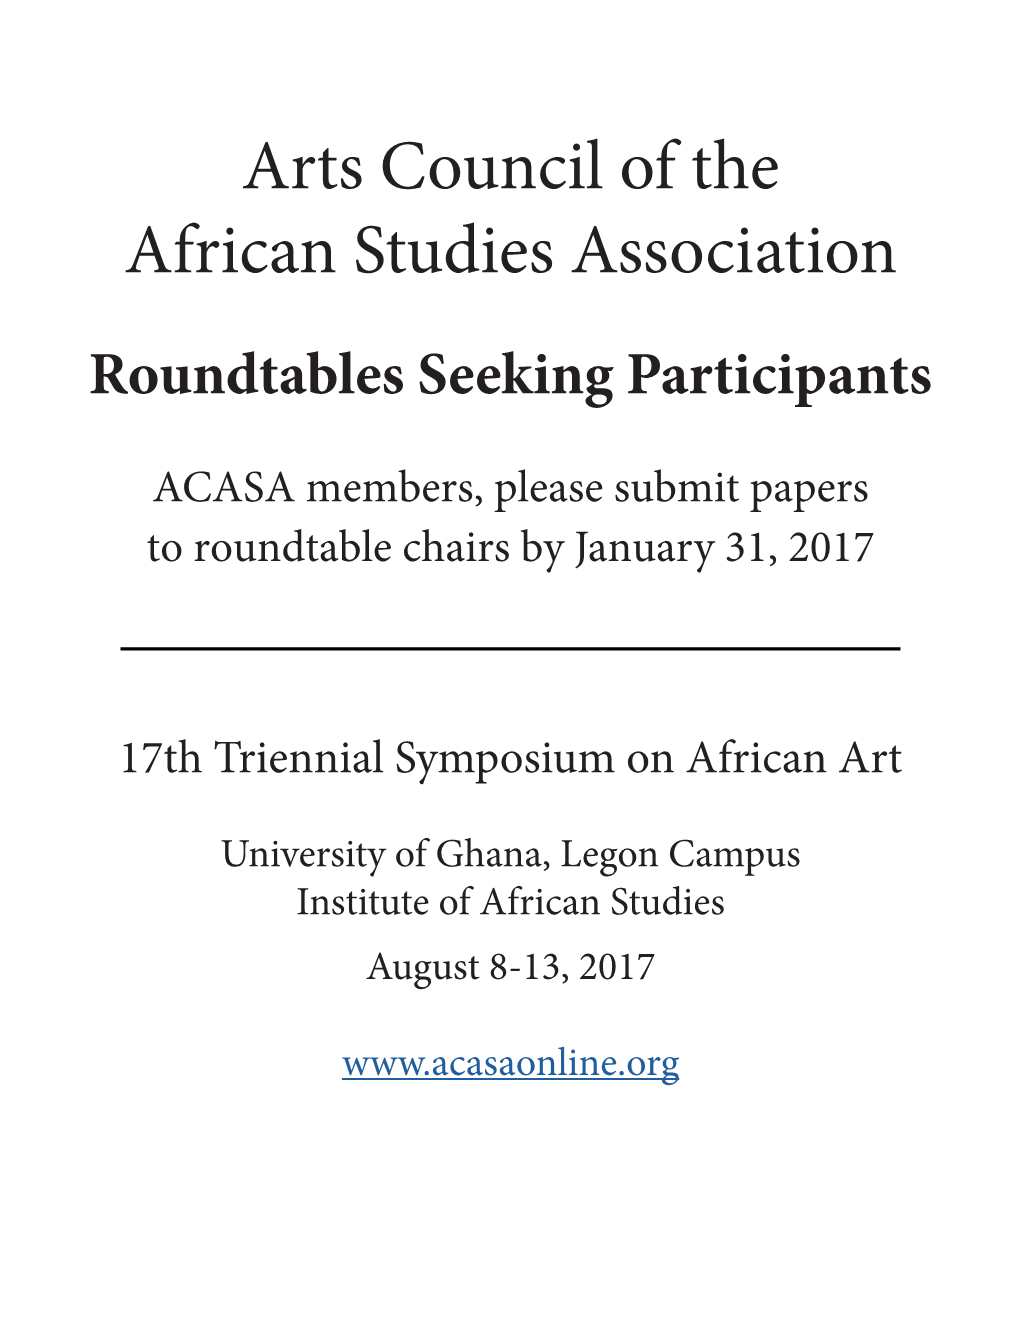 Roundtables Seeking Participants